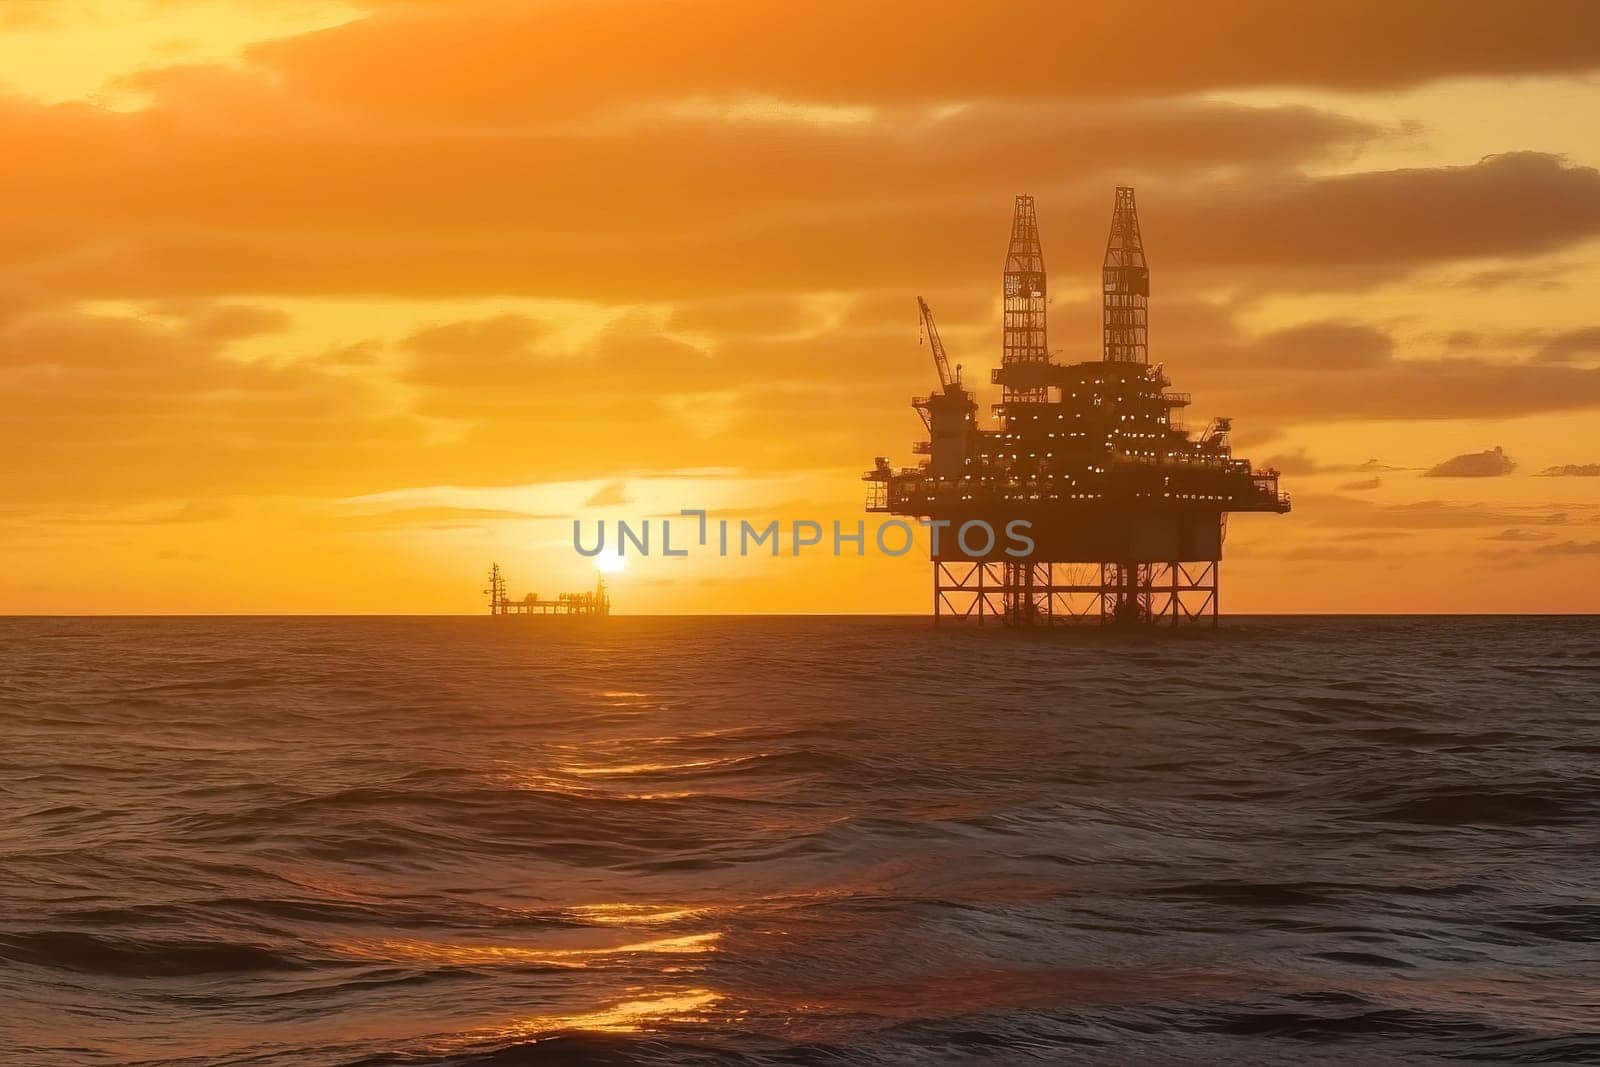 Oil rig in the ocean by GekaSkr